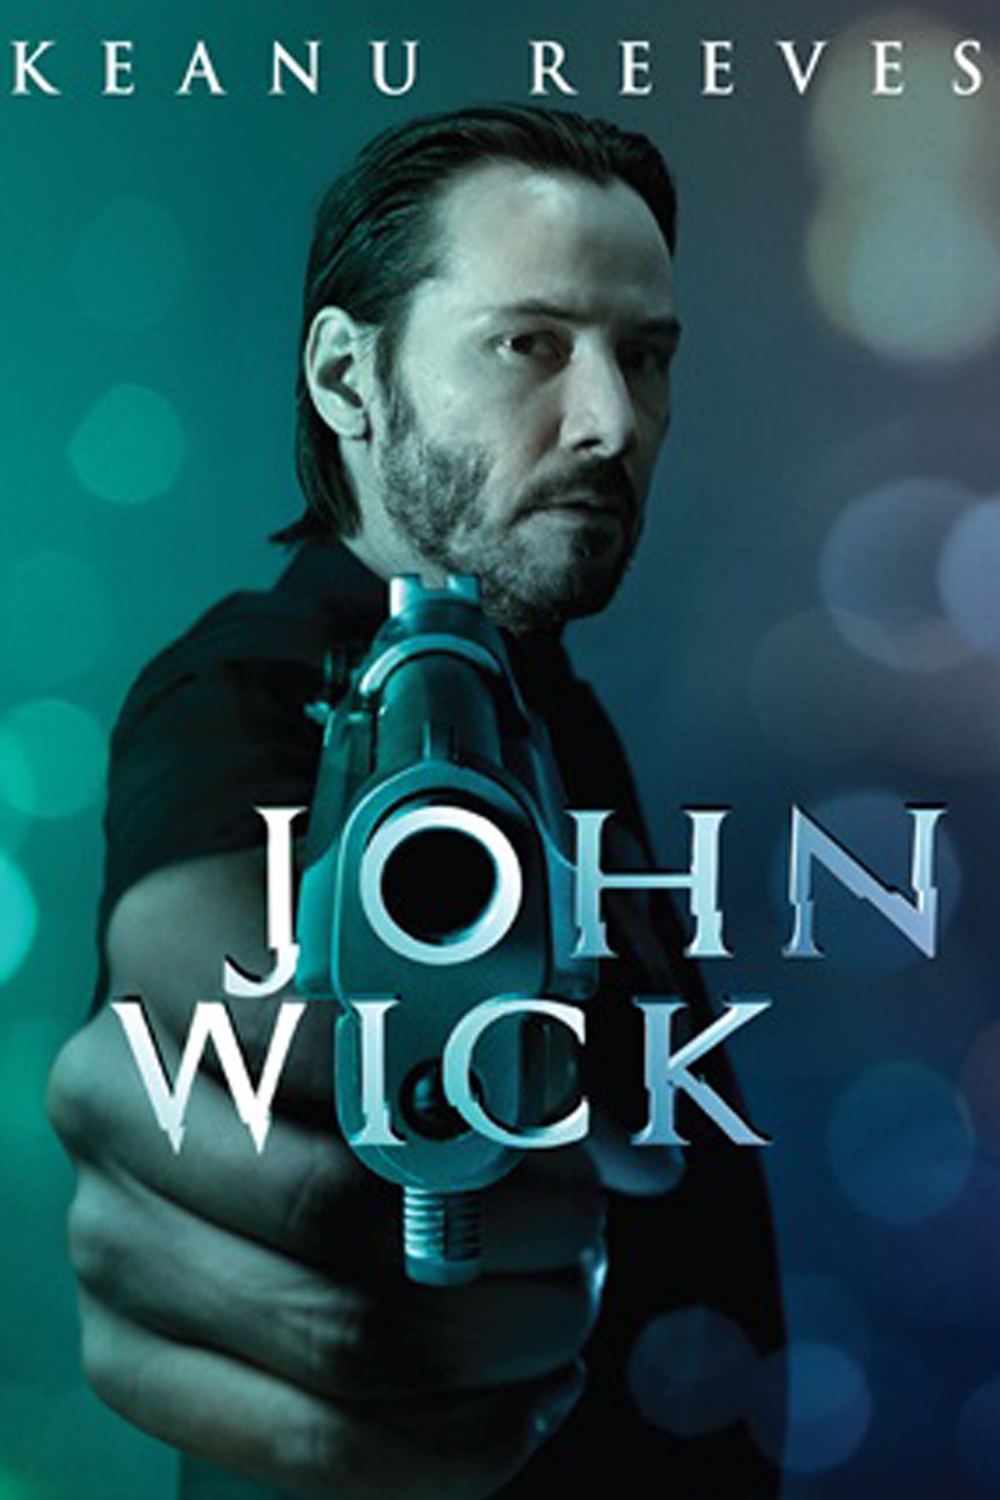 download john wick 2 movie 2017 torrent